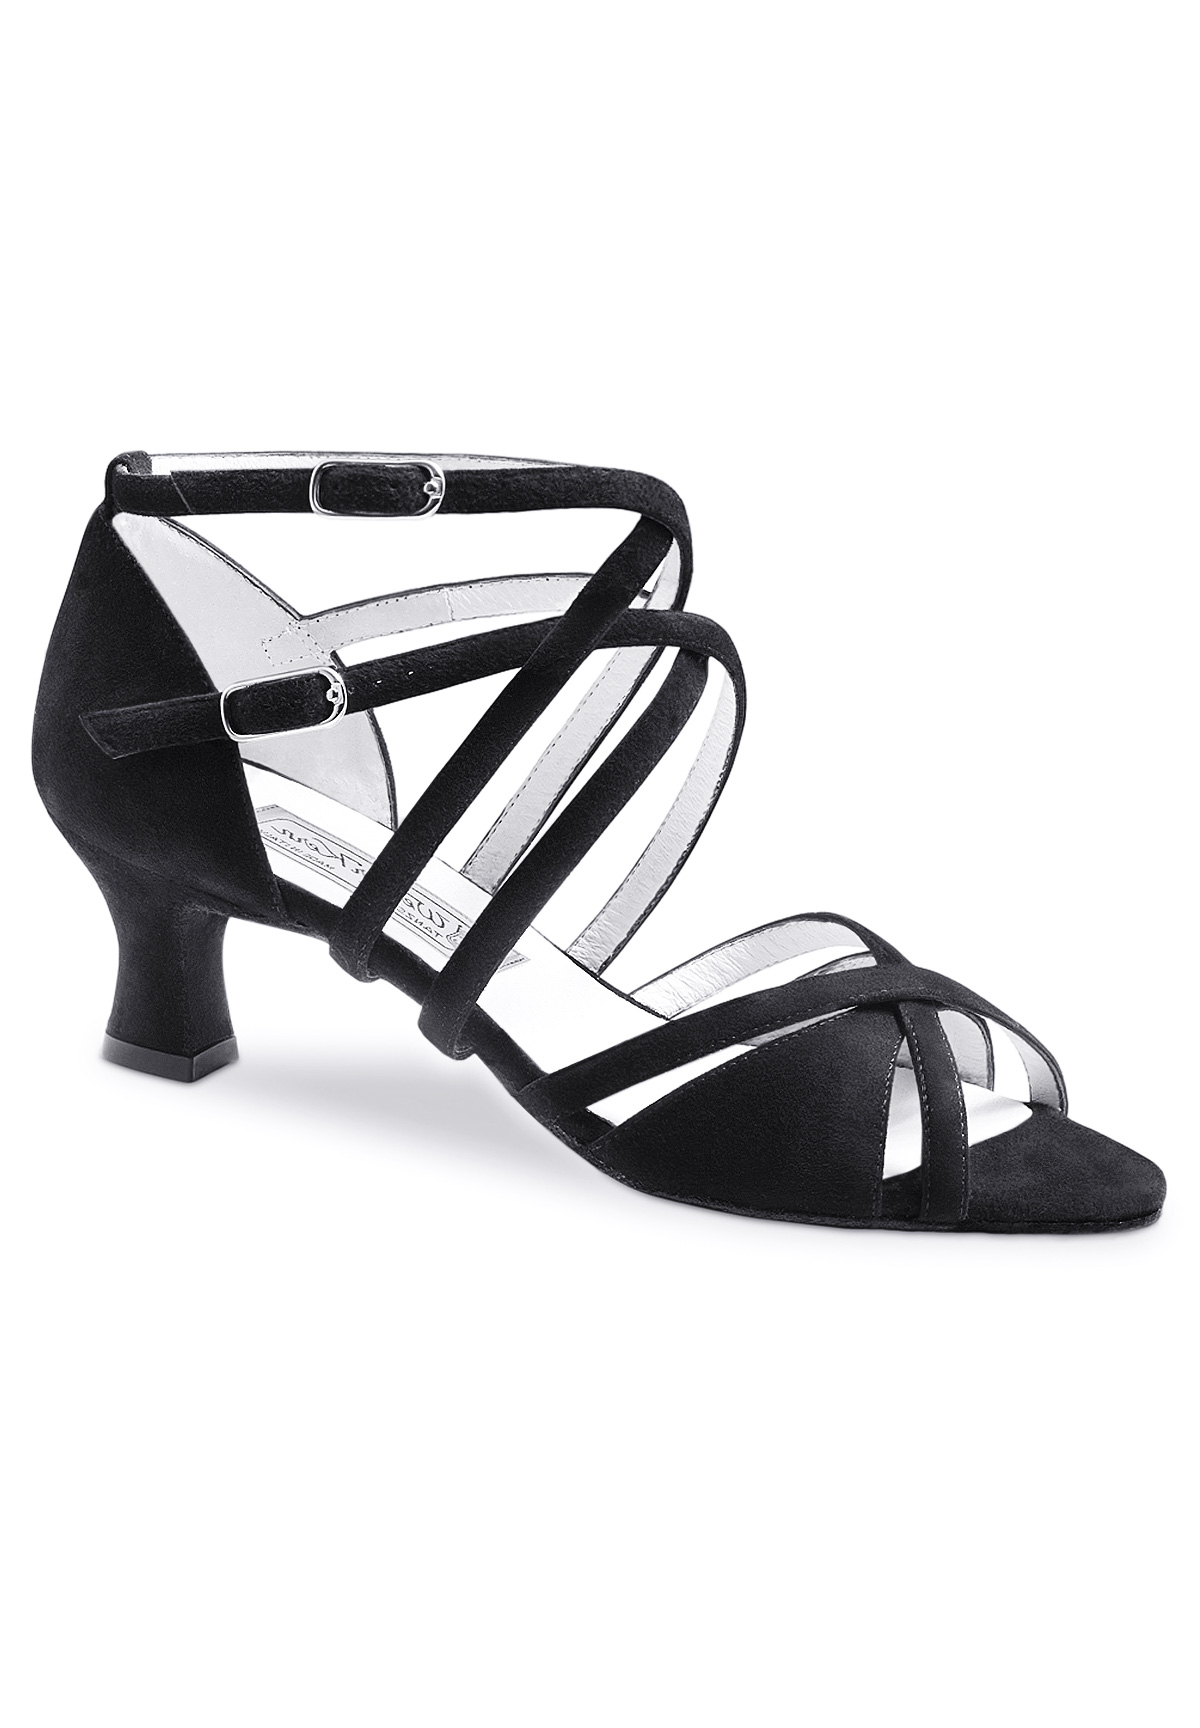 Cuero Negro/Blanco Werner Kern Hombres Zapatos de Baile 28023 2 cm Ballroom